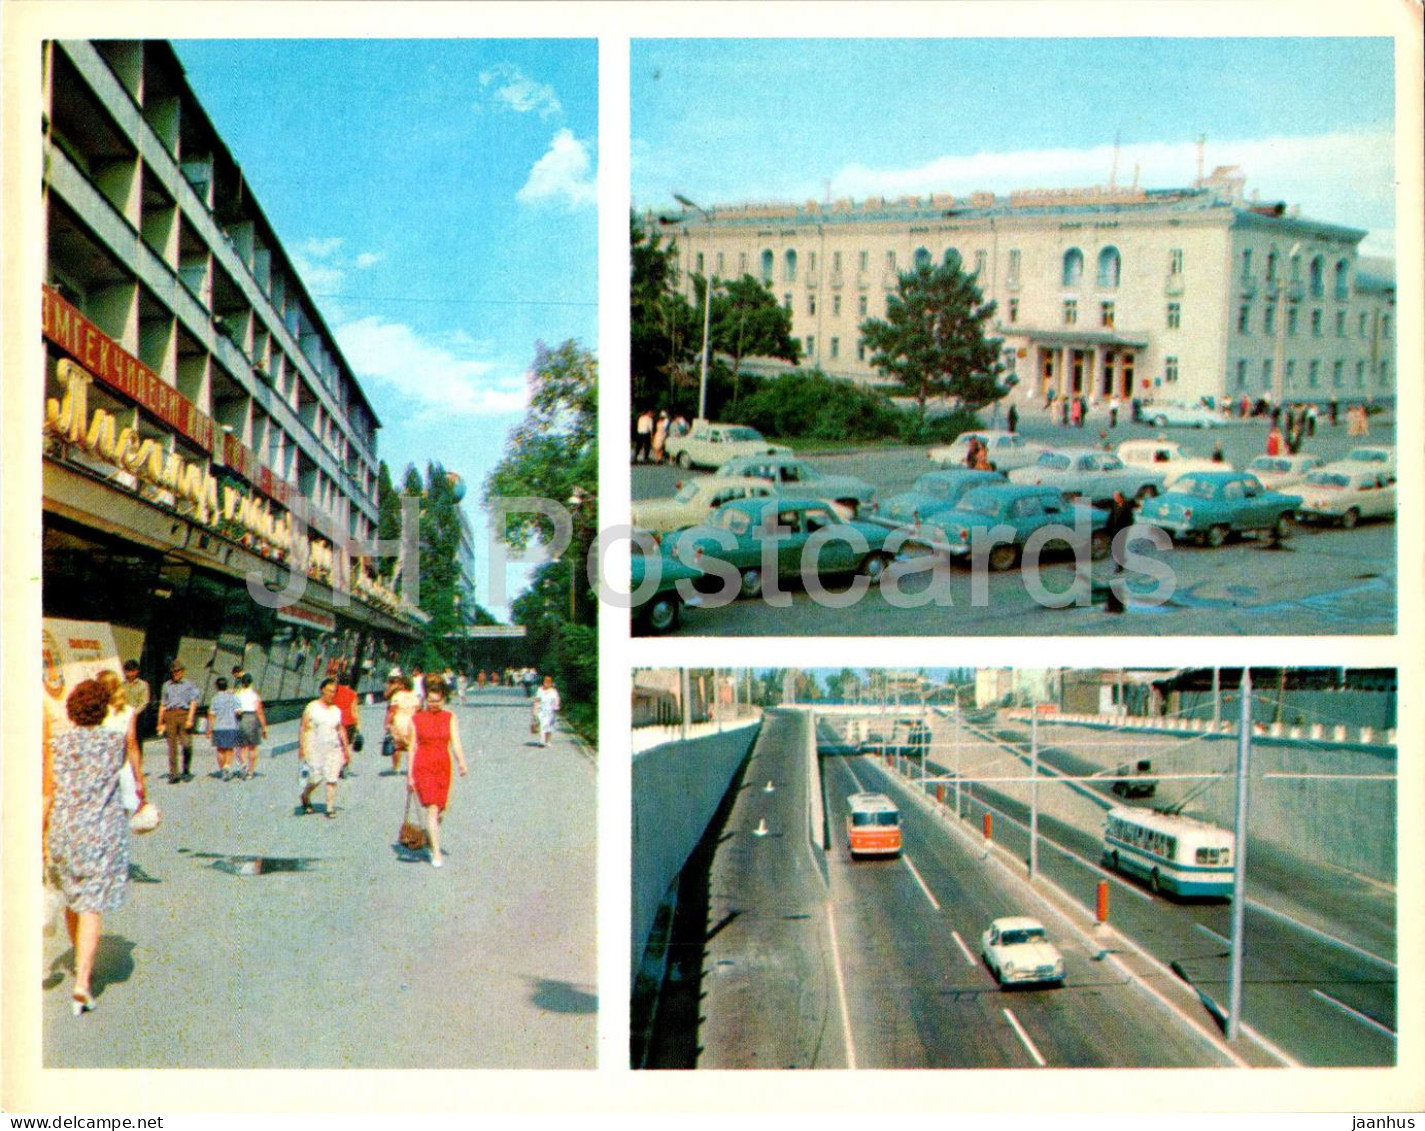 Bishkek - Frunze - House Of Clothes - Ala Too Hotel - Mir Avenue - Car Volga Trolleybus 1974 - Kyrgyzstan USSR - Unused - Kirghizistan